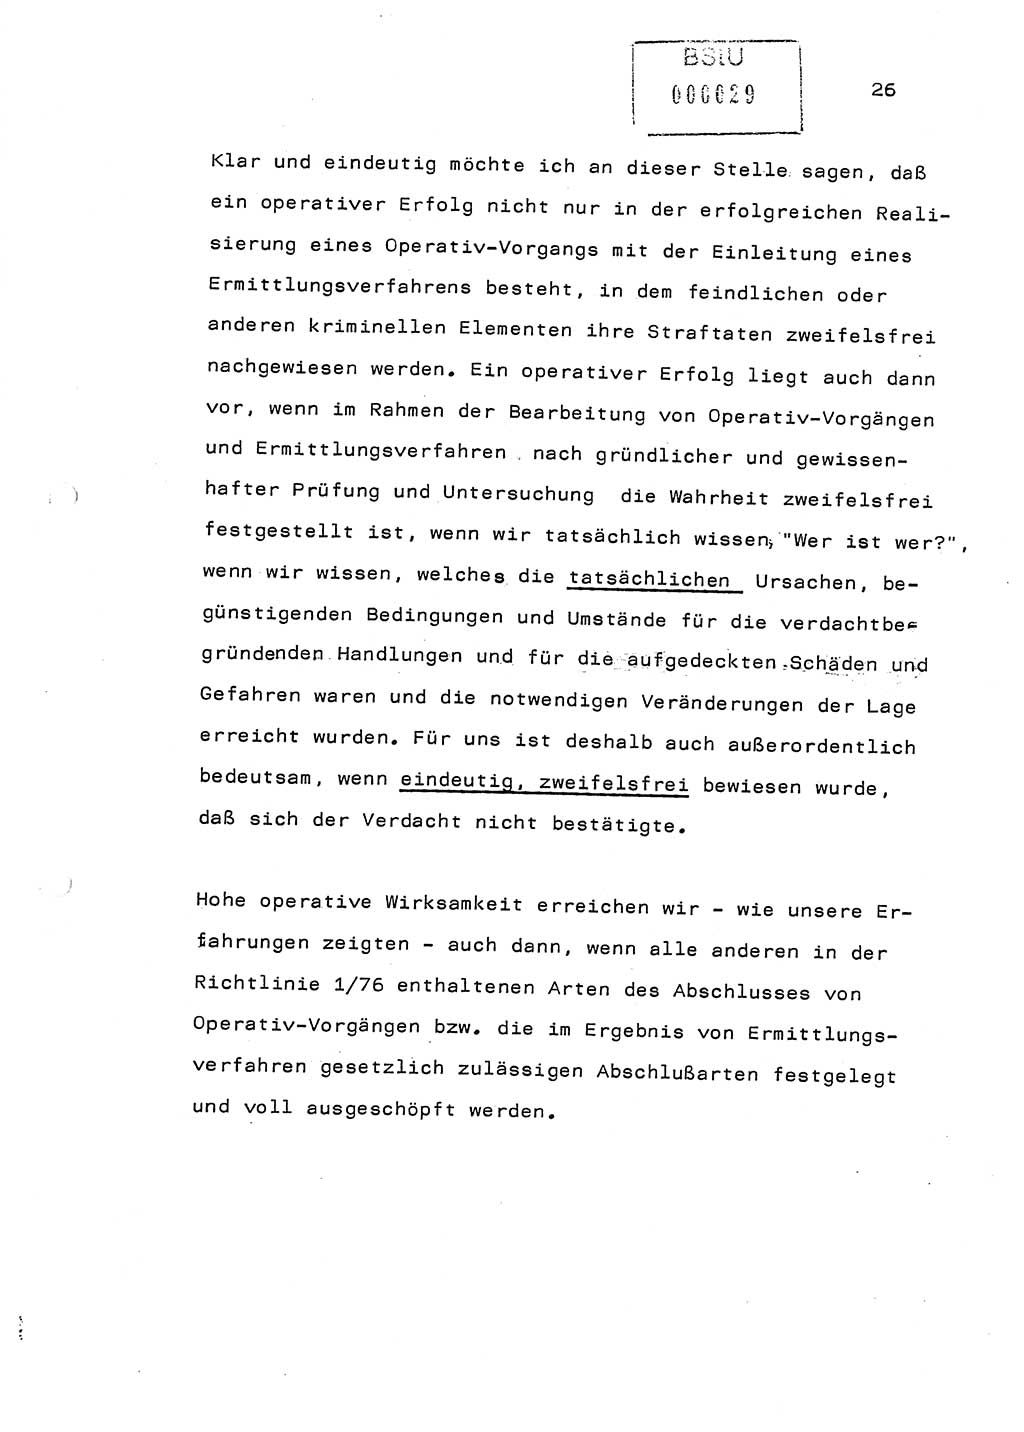 Referat (Generaloberst Erich Mielke) auf der Zentralen Dienstkonferenz am 24.5.1979 [Ministerium für Staatssicherheit (MfS), Deutsche Demokratische Republik (DDR), Der Minister], Berlin 1979, Seite 26 (Ref. DK DDR MfS Min. /79 1979, S. 26)